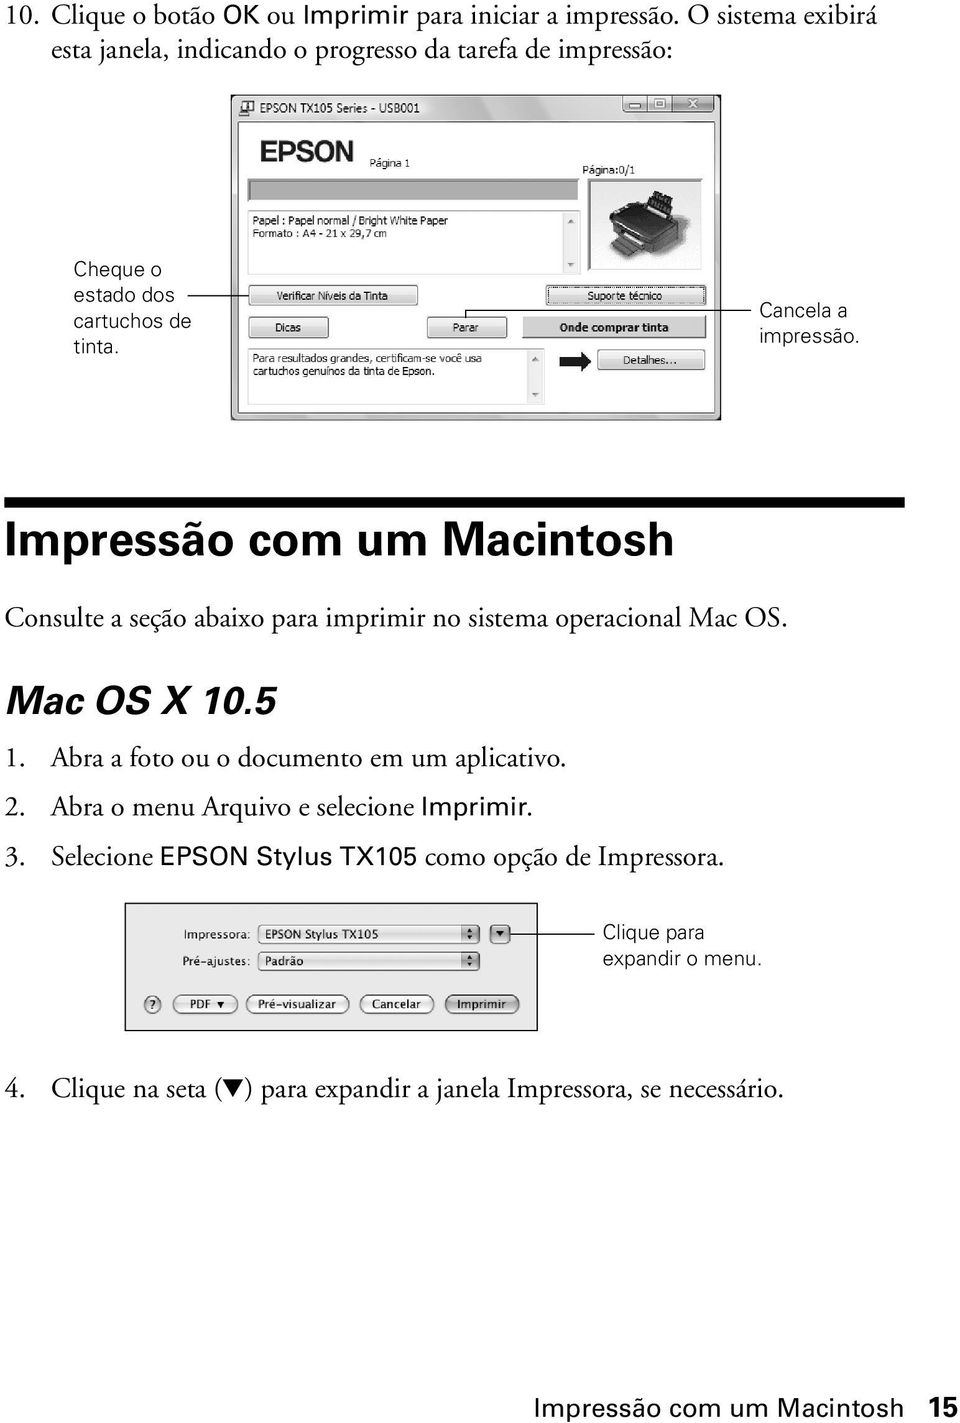 Impressão com um Macintosh Consulte a seção abaixo para imprimir no sistema operacional Mac OS. Mac OS X 10.5 1.